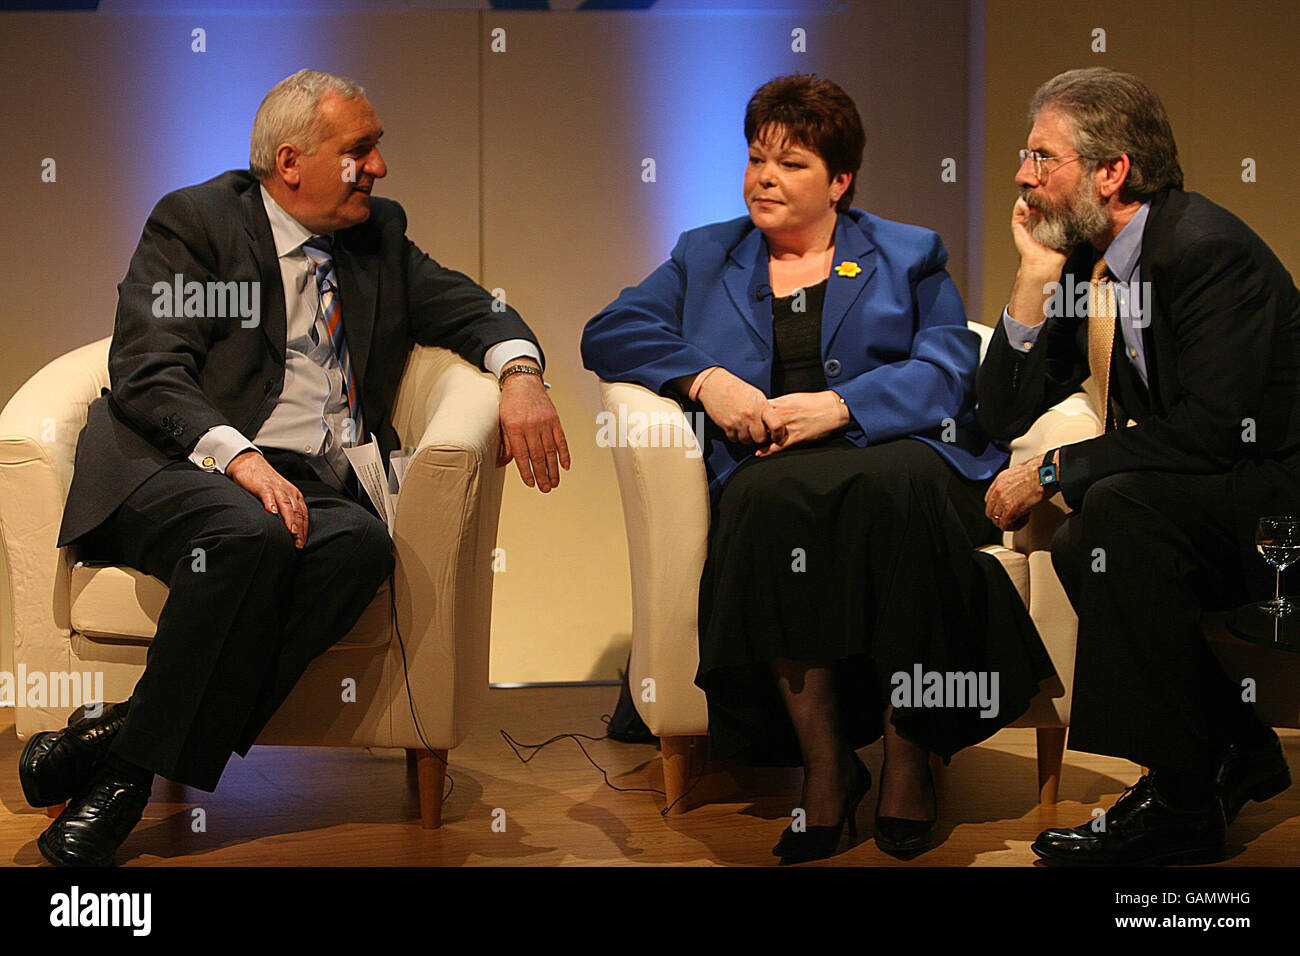 (Von links nach rechts) (von links nach rechts) Taoiseach Bertie Ahern, PUP-Führer Dawn Purvis und Sinn Fein's Gerry Adams im Bild in Belfast, wo sich heute Politiker versammelten, die vor zehn Jahren das Karfreitagsabkommen ausgehandelt haben. Stockfoto